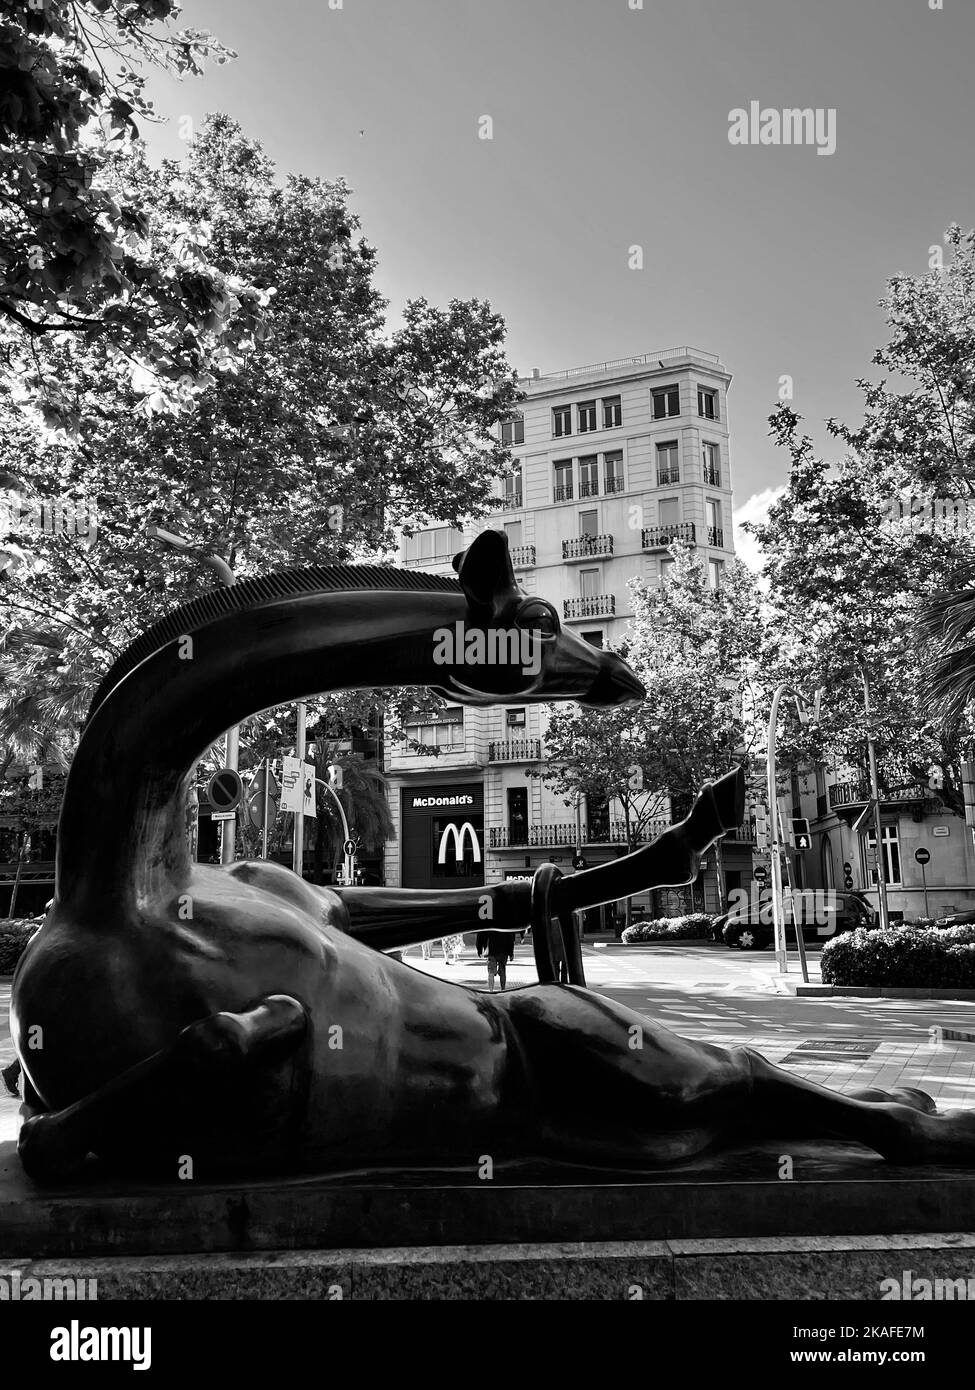 Una estatua de Giraffe en blanco y negro en Barcelona, España Foto de stock